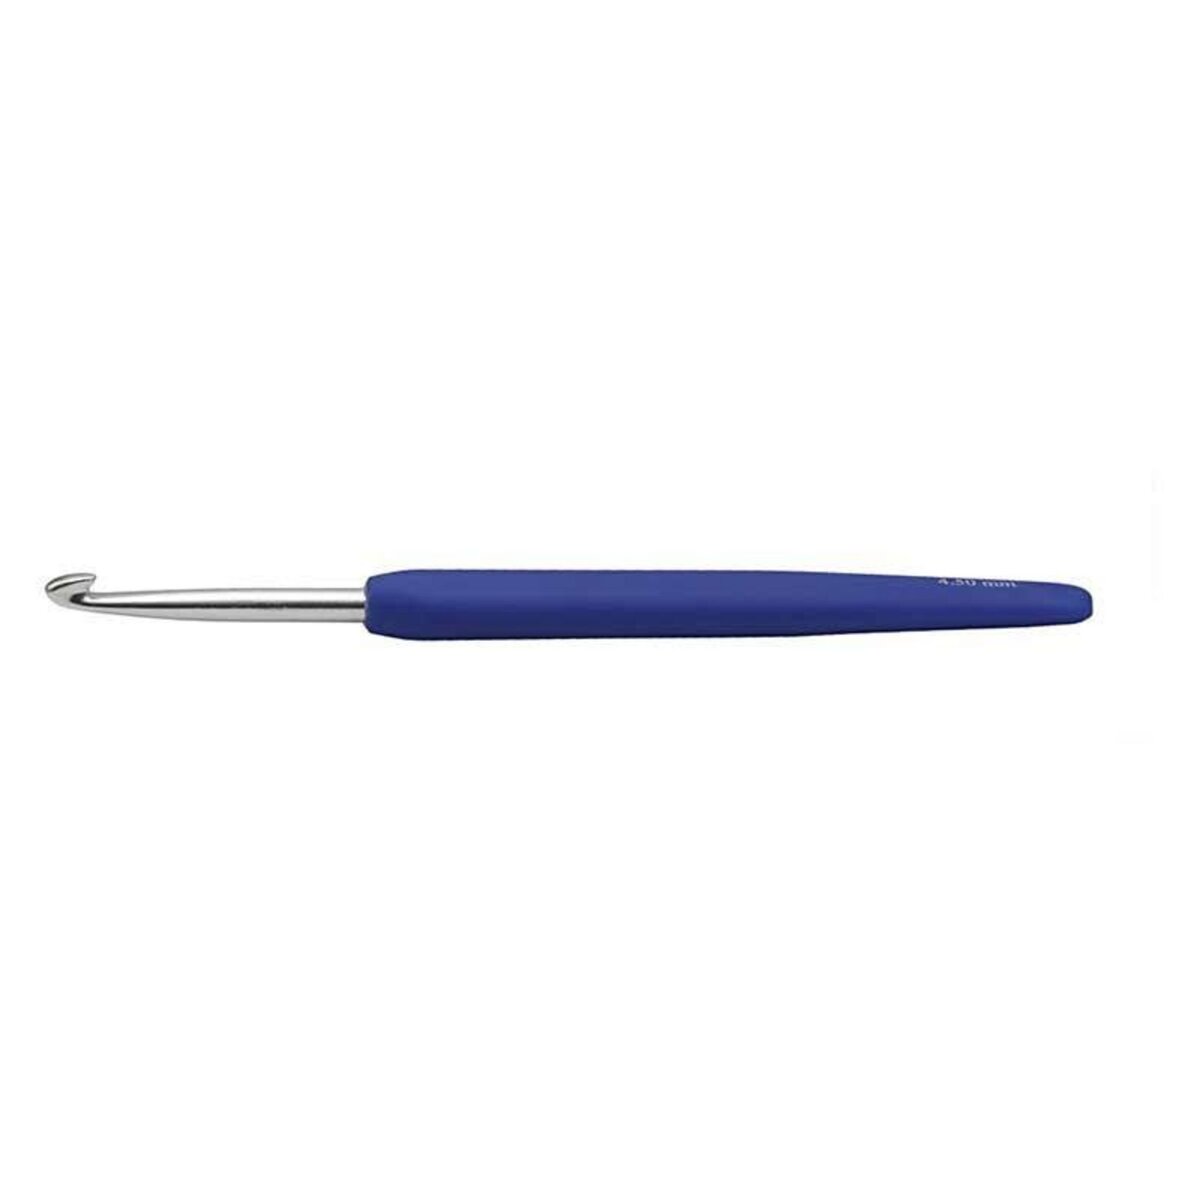  Aiguille à crochet ergonomique bleu - 4,5 mm